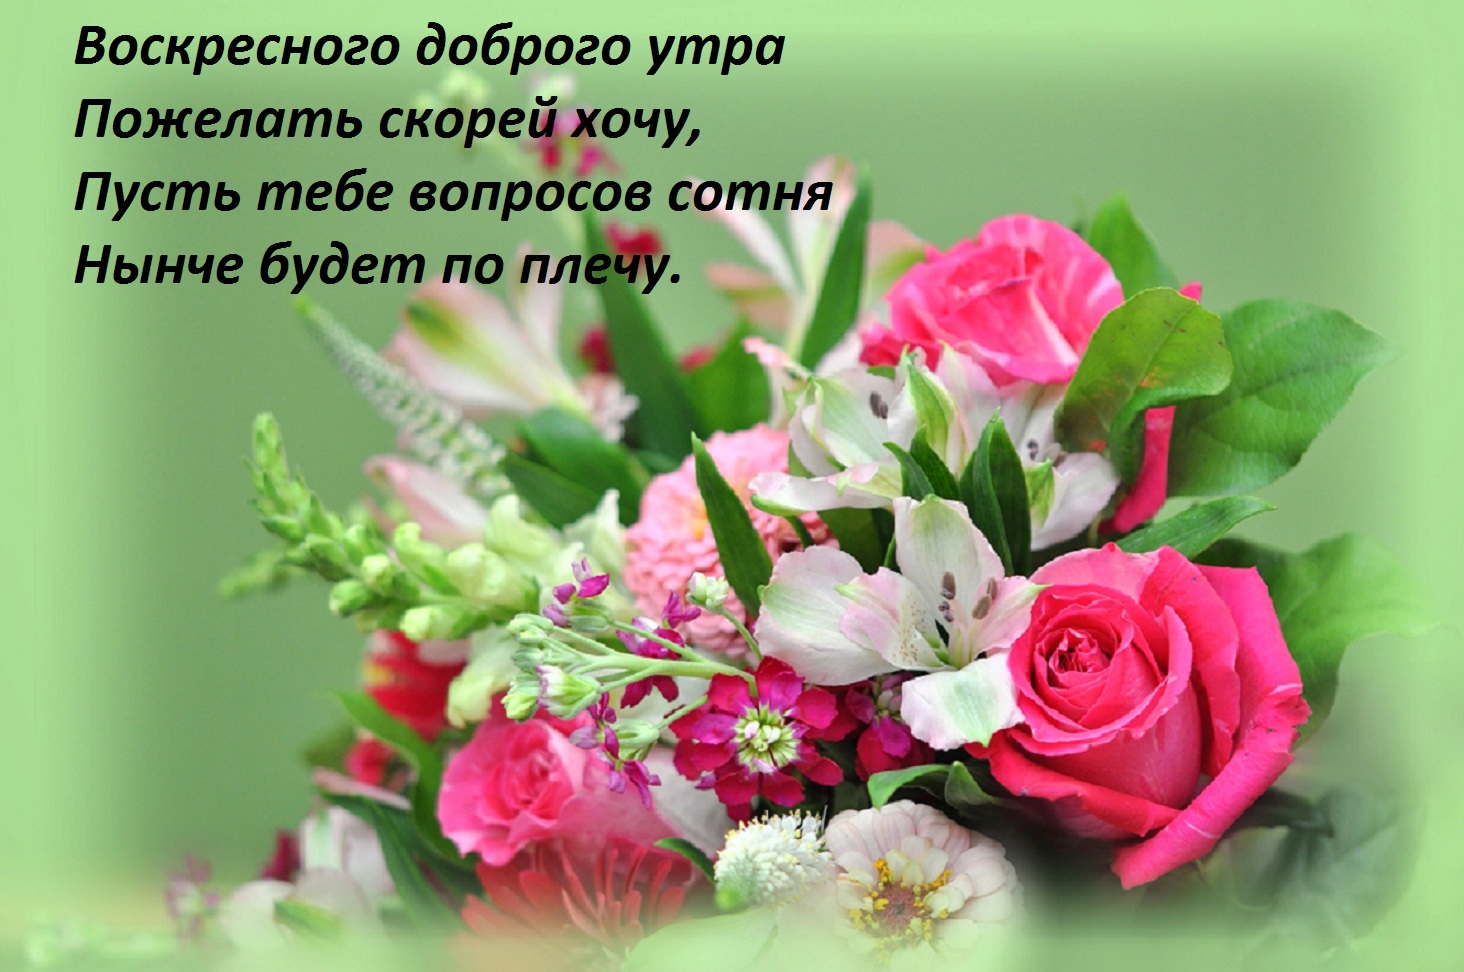 Фото бесплатно букет цветов, стих, воскресного доброго утра пожелать скорей хочу